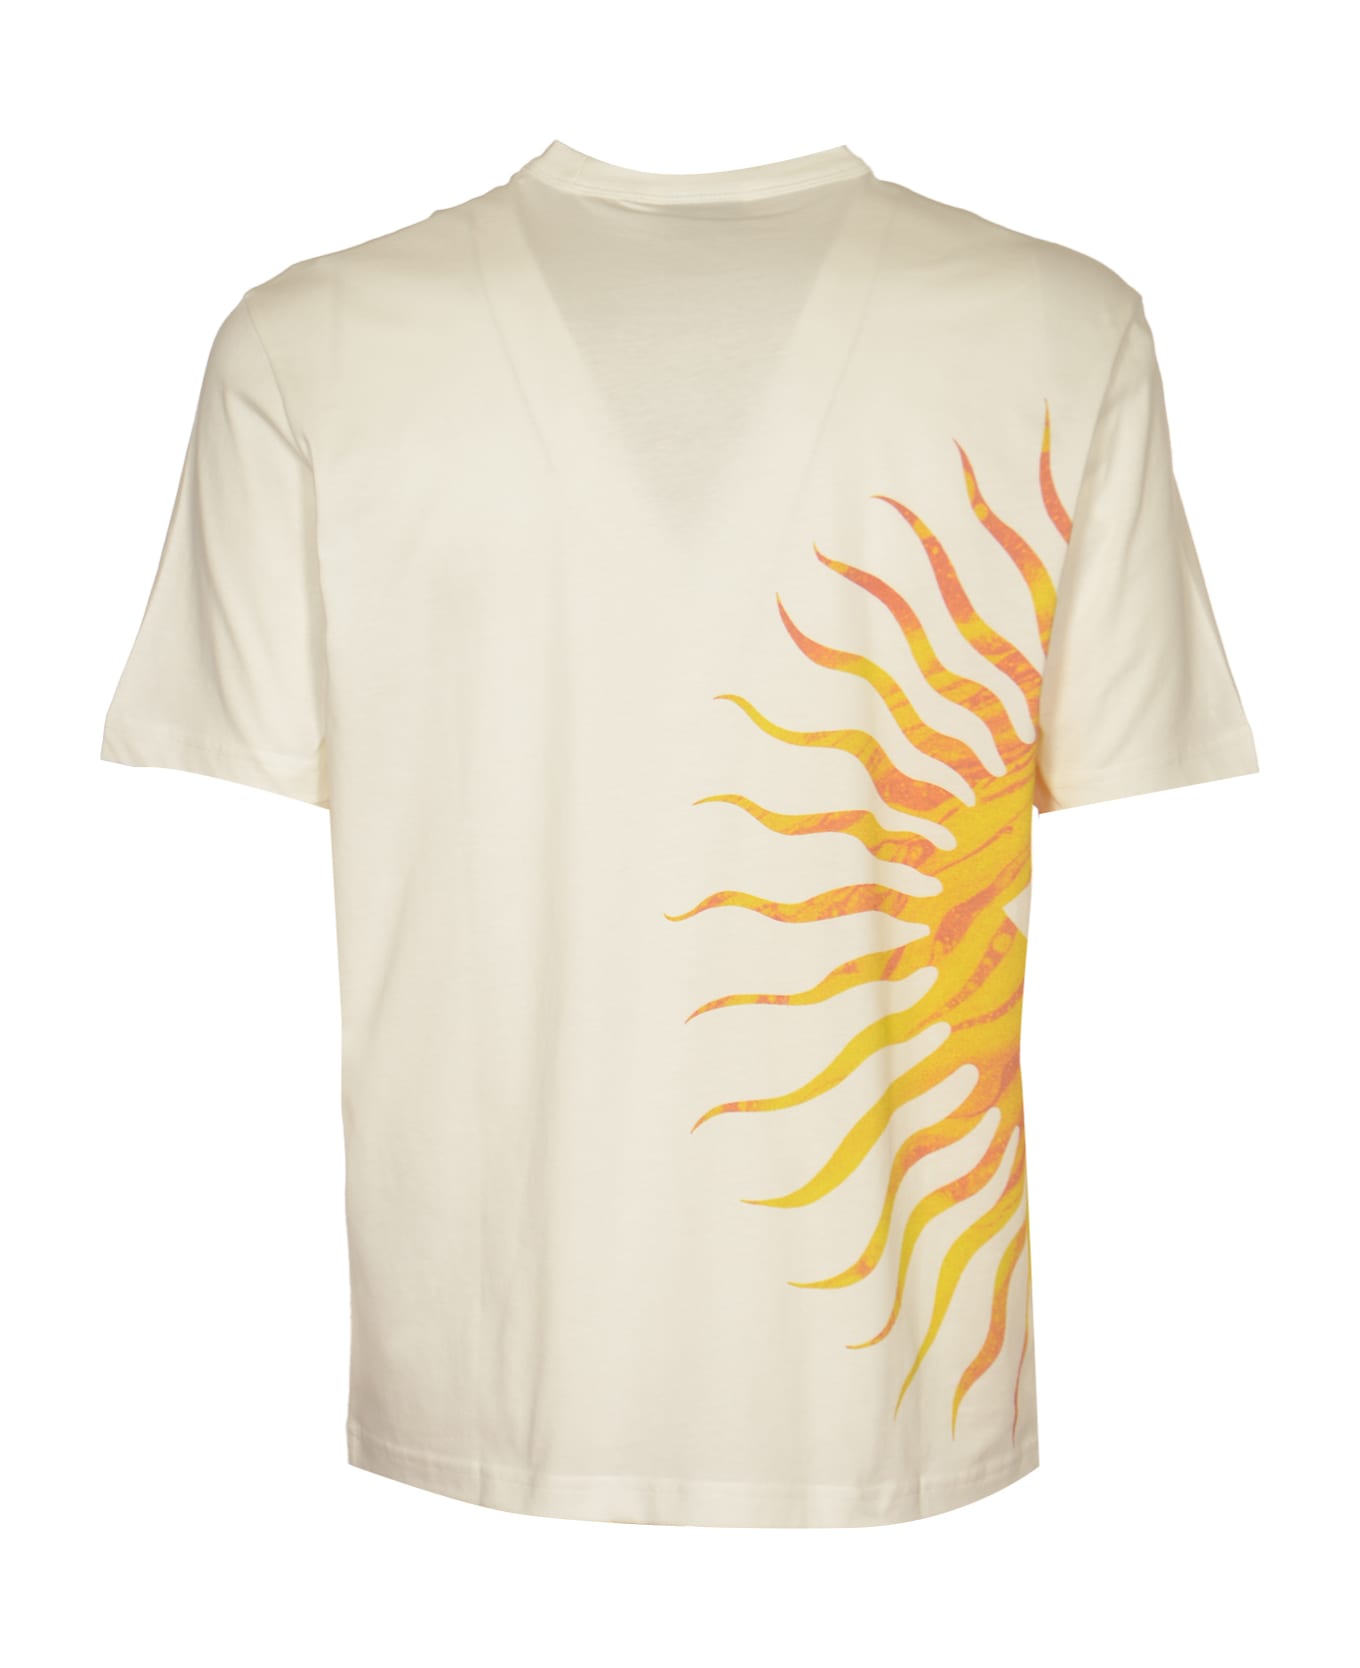 Paul Smith Sunnyside T-shirt - White シャツ